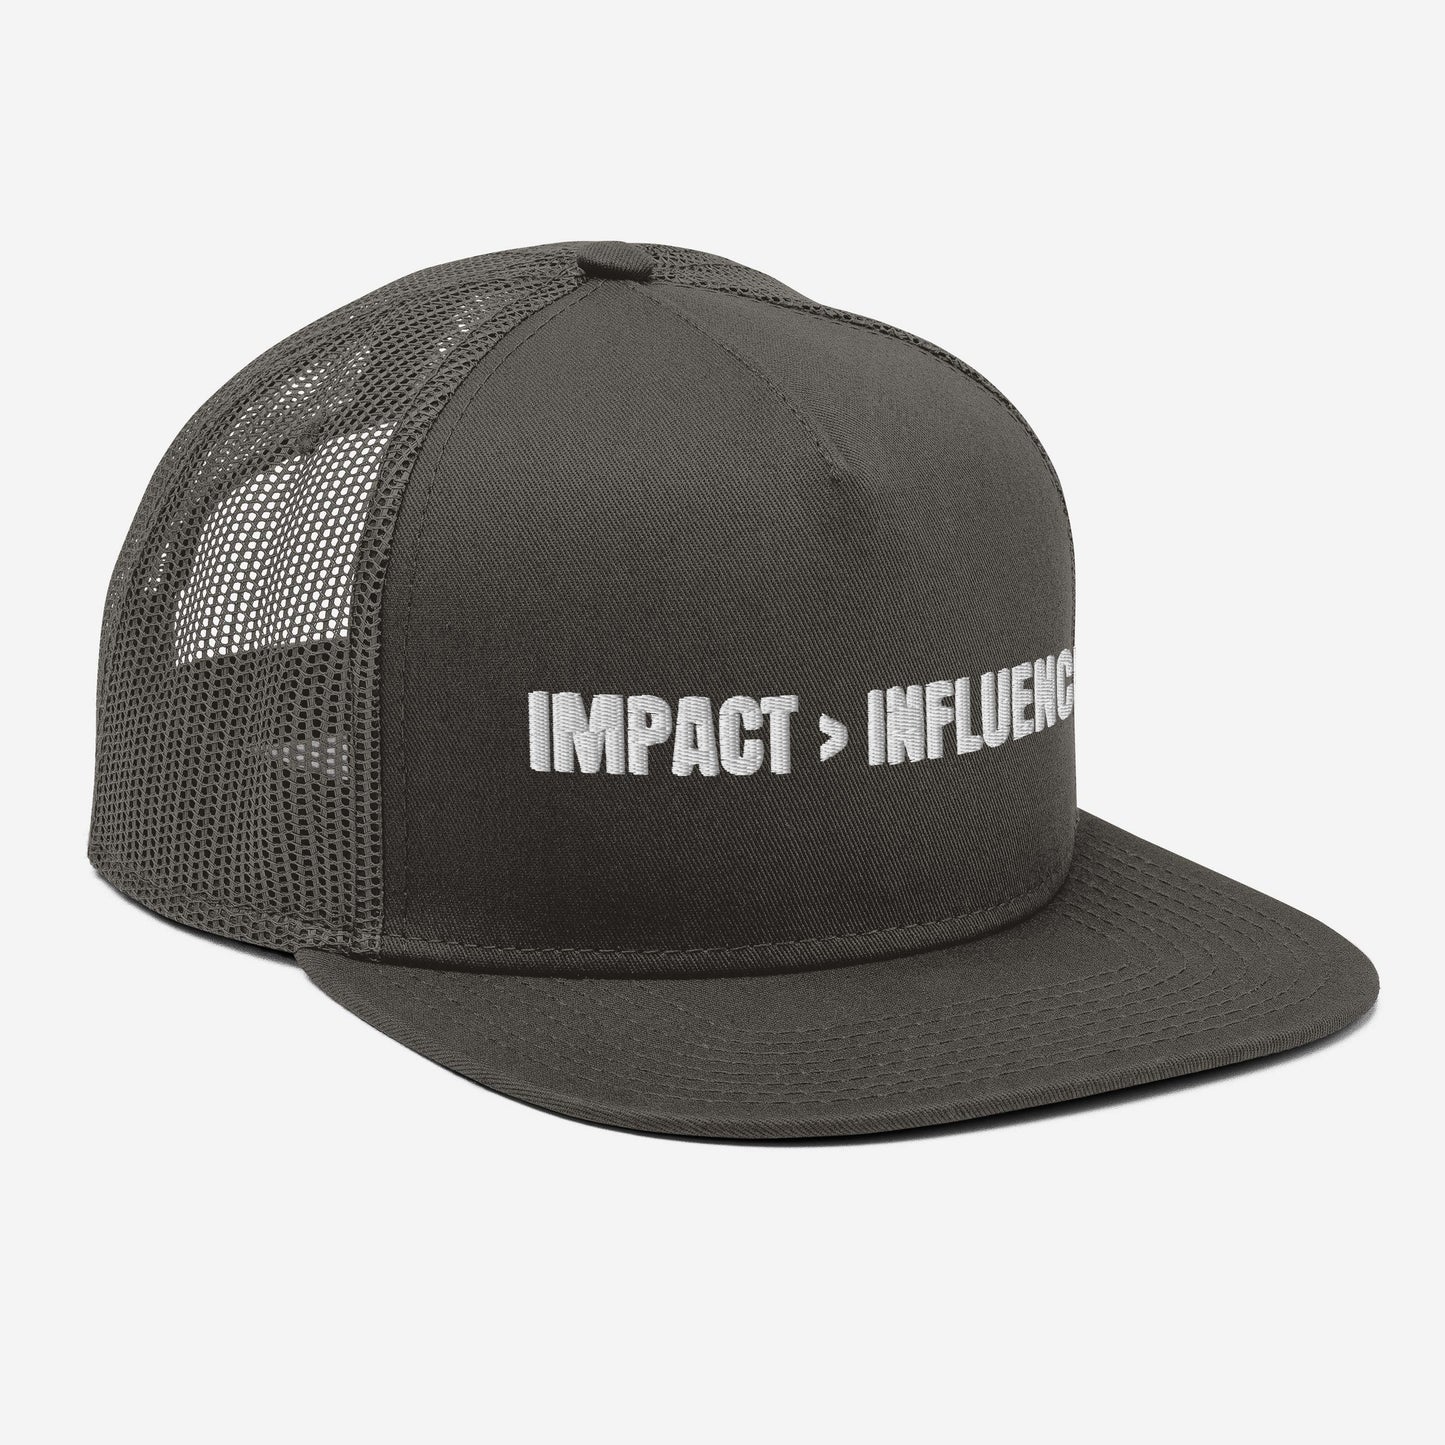 IMPACT > INFLUENCE Mesh Back Snapback